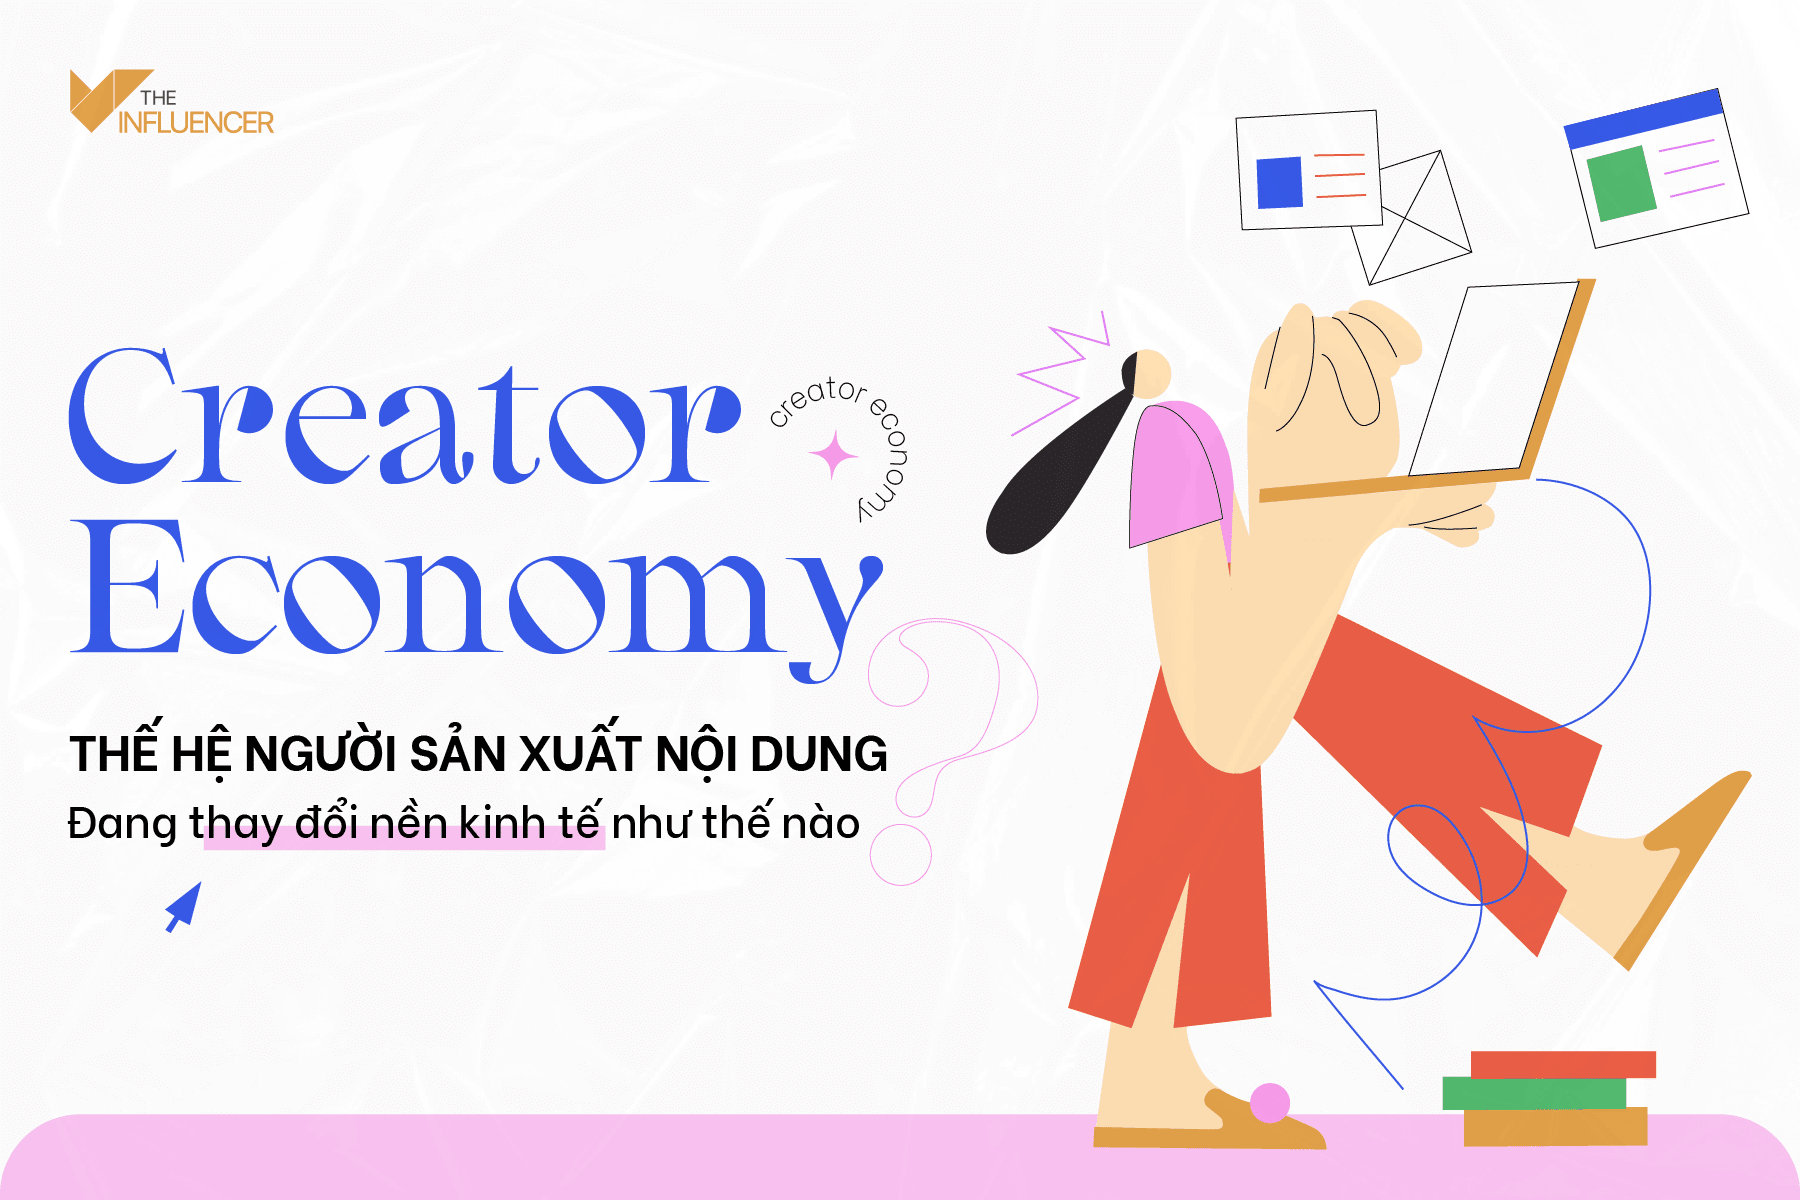 Creator Economy - Thế hệ người sản xuất nội dung đang thay đổi nền kinh tế như thế nào?